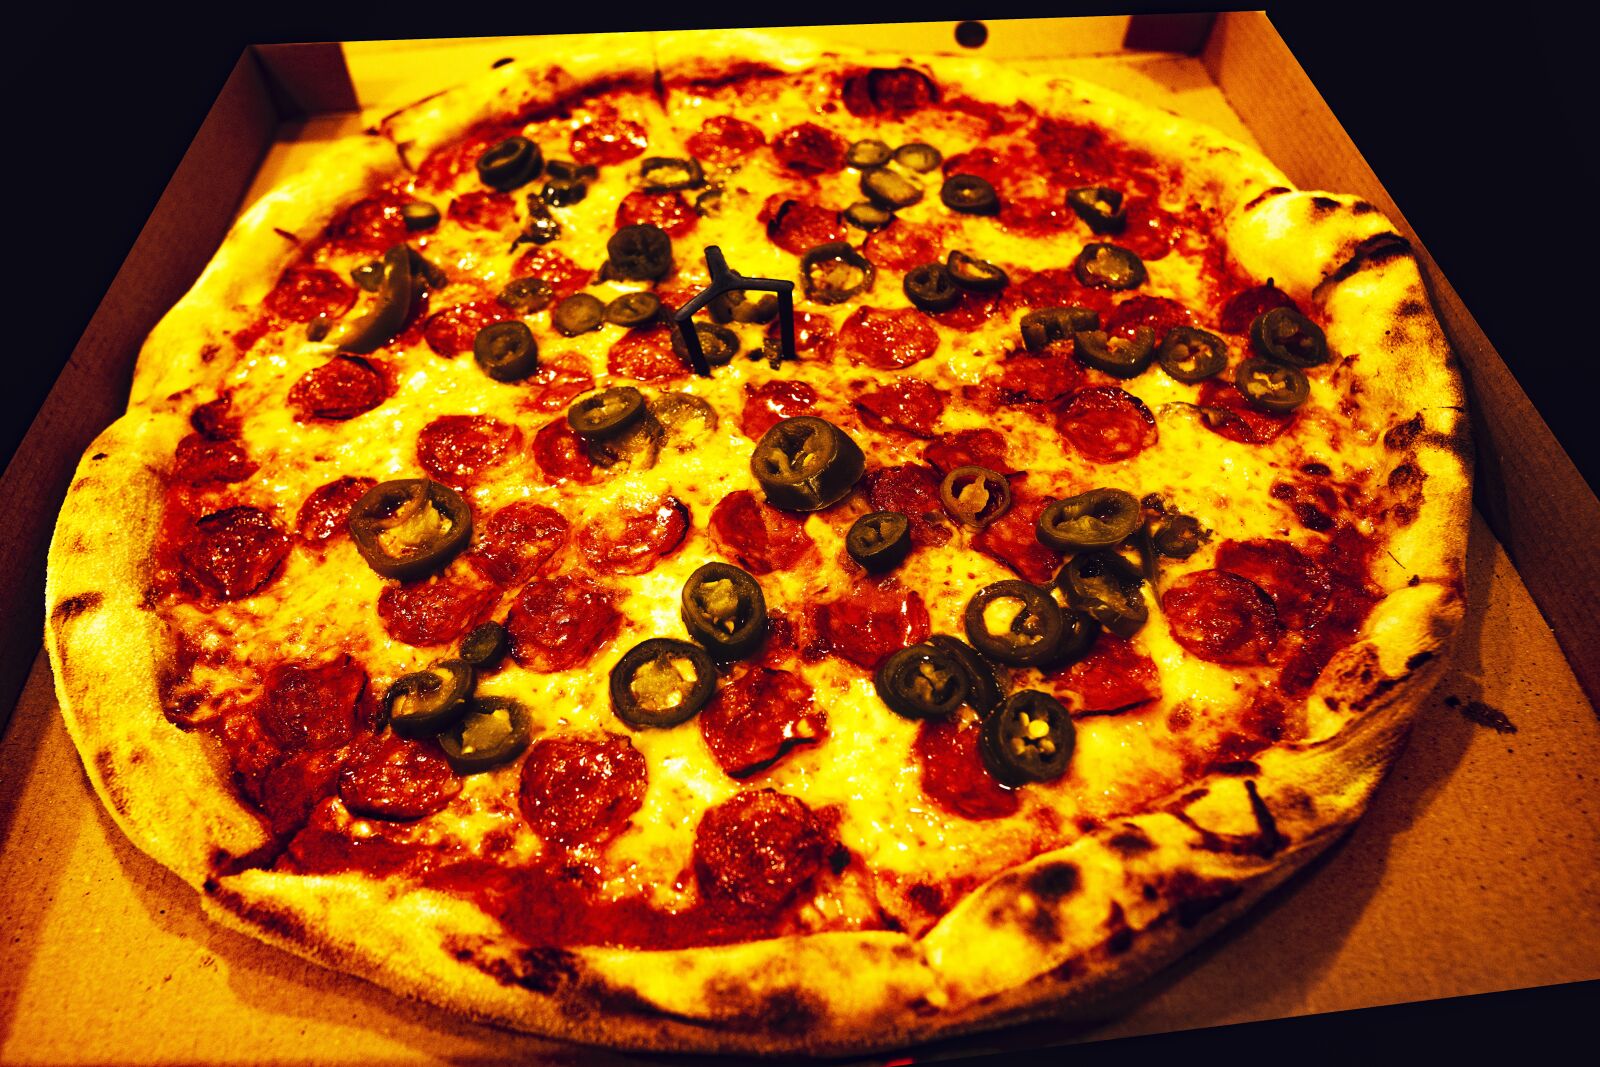 Sony a6400 sample photo. Pizza, food, italian photography